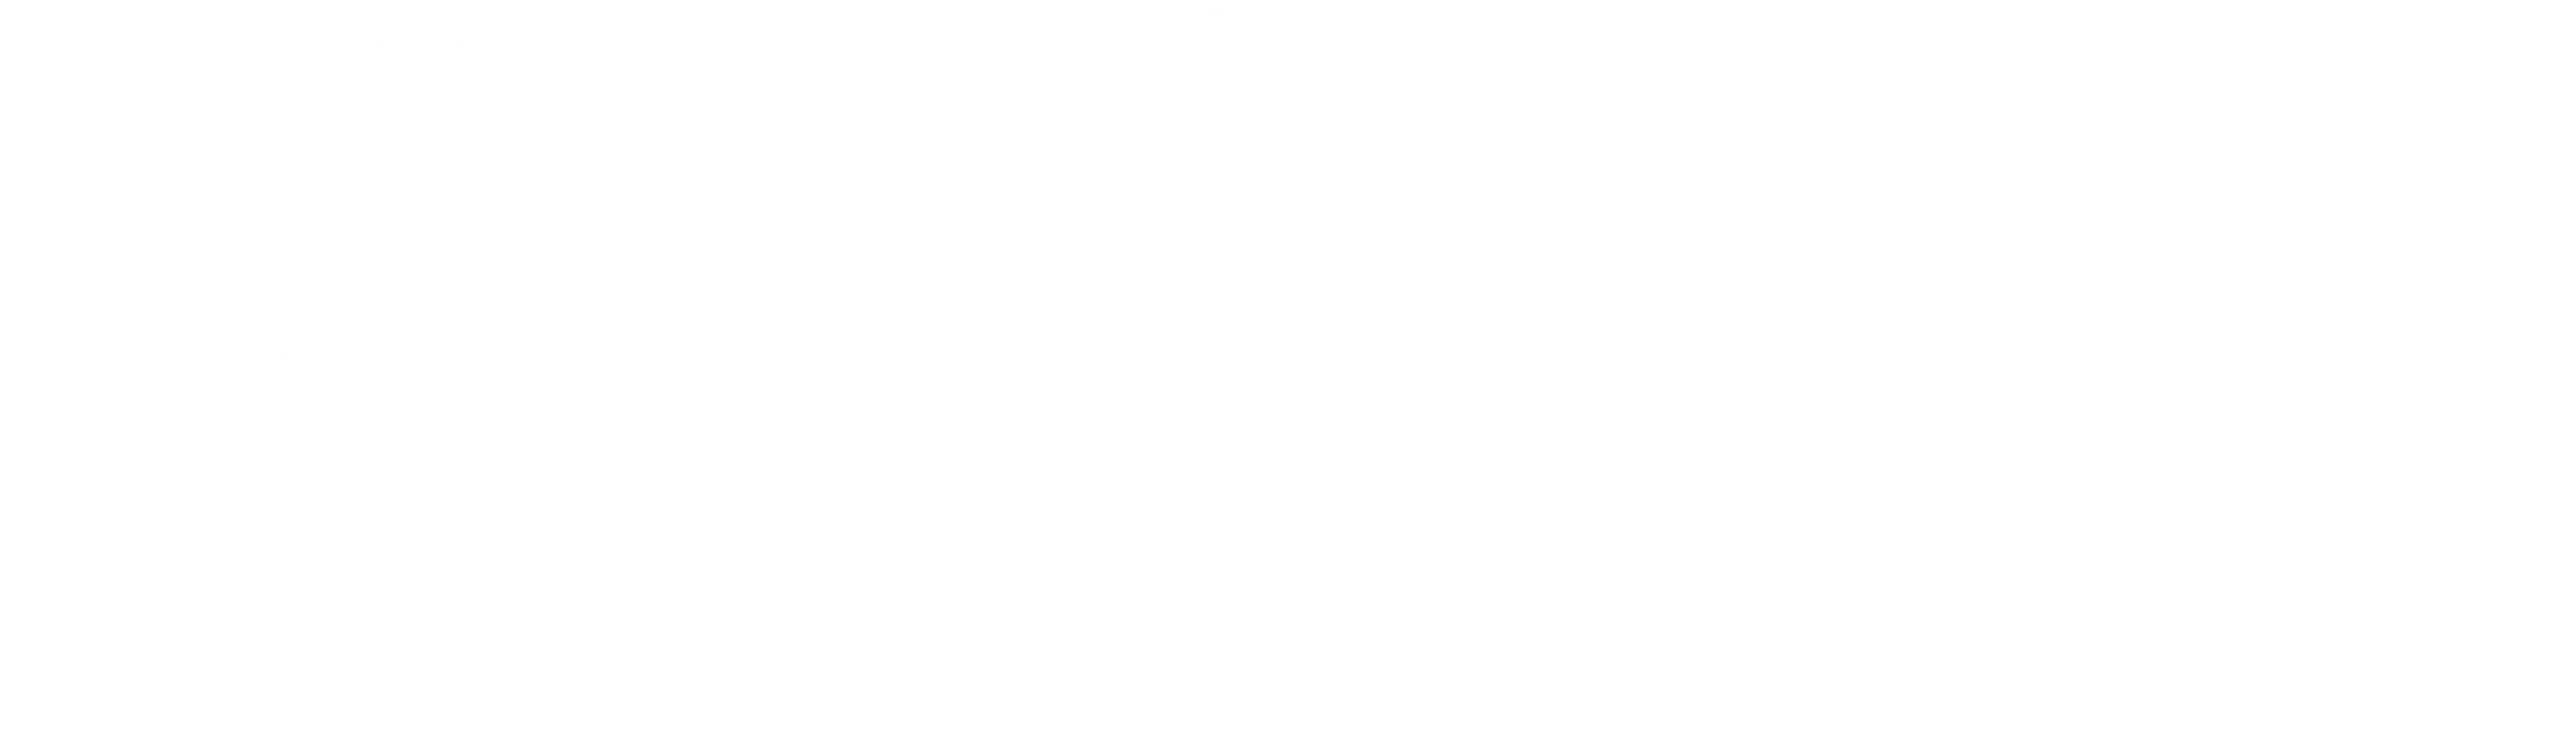 Logotipo de la Universidad de Monash en blanco